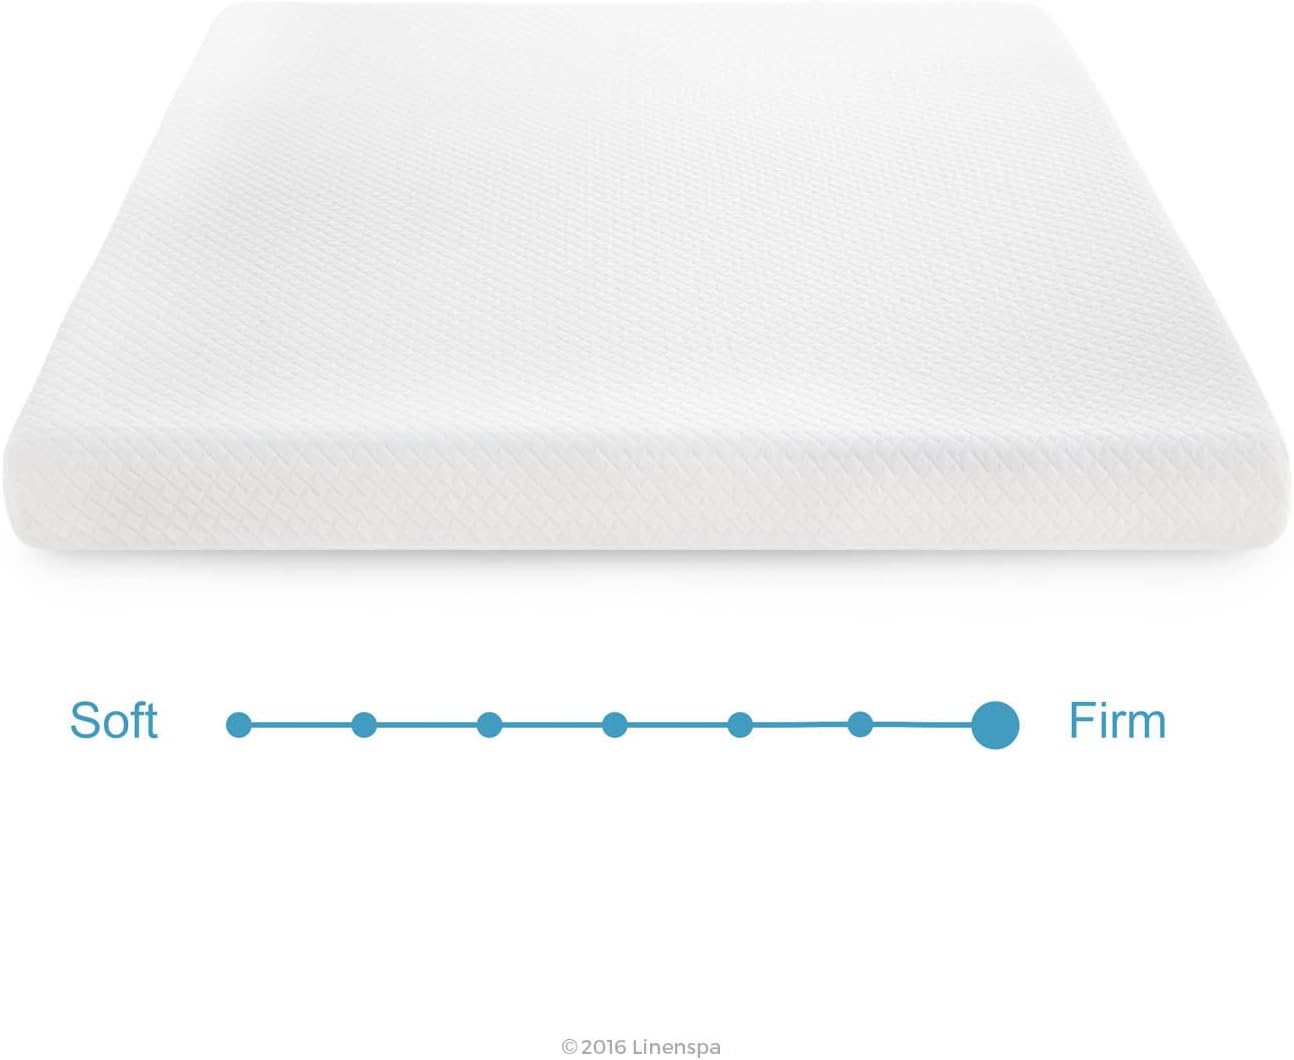 NEW - Linenspa TWIN 5 Inch Gel Memory Foam Mattress, Firm Mattress, Low Profile Bed Twin 5 Inch Mattress - Retail $89